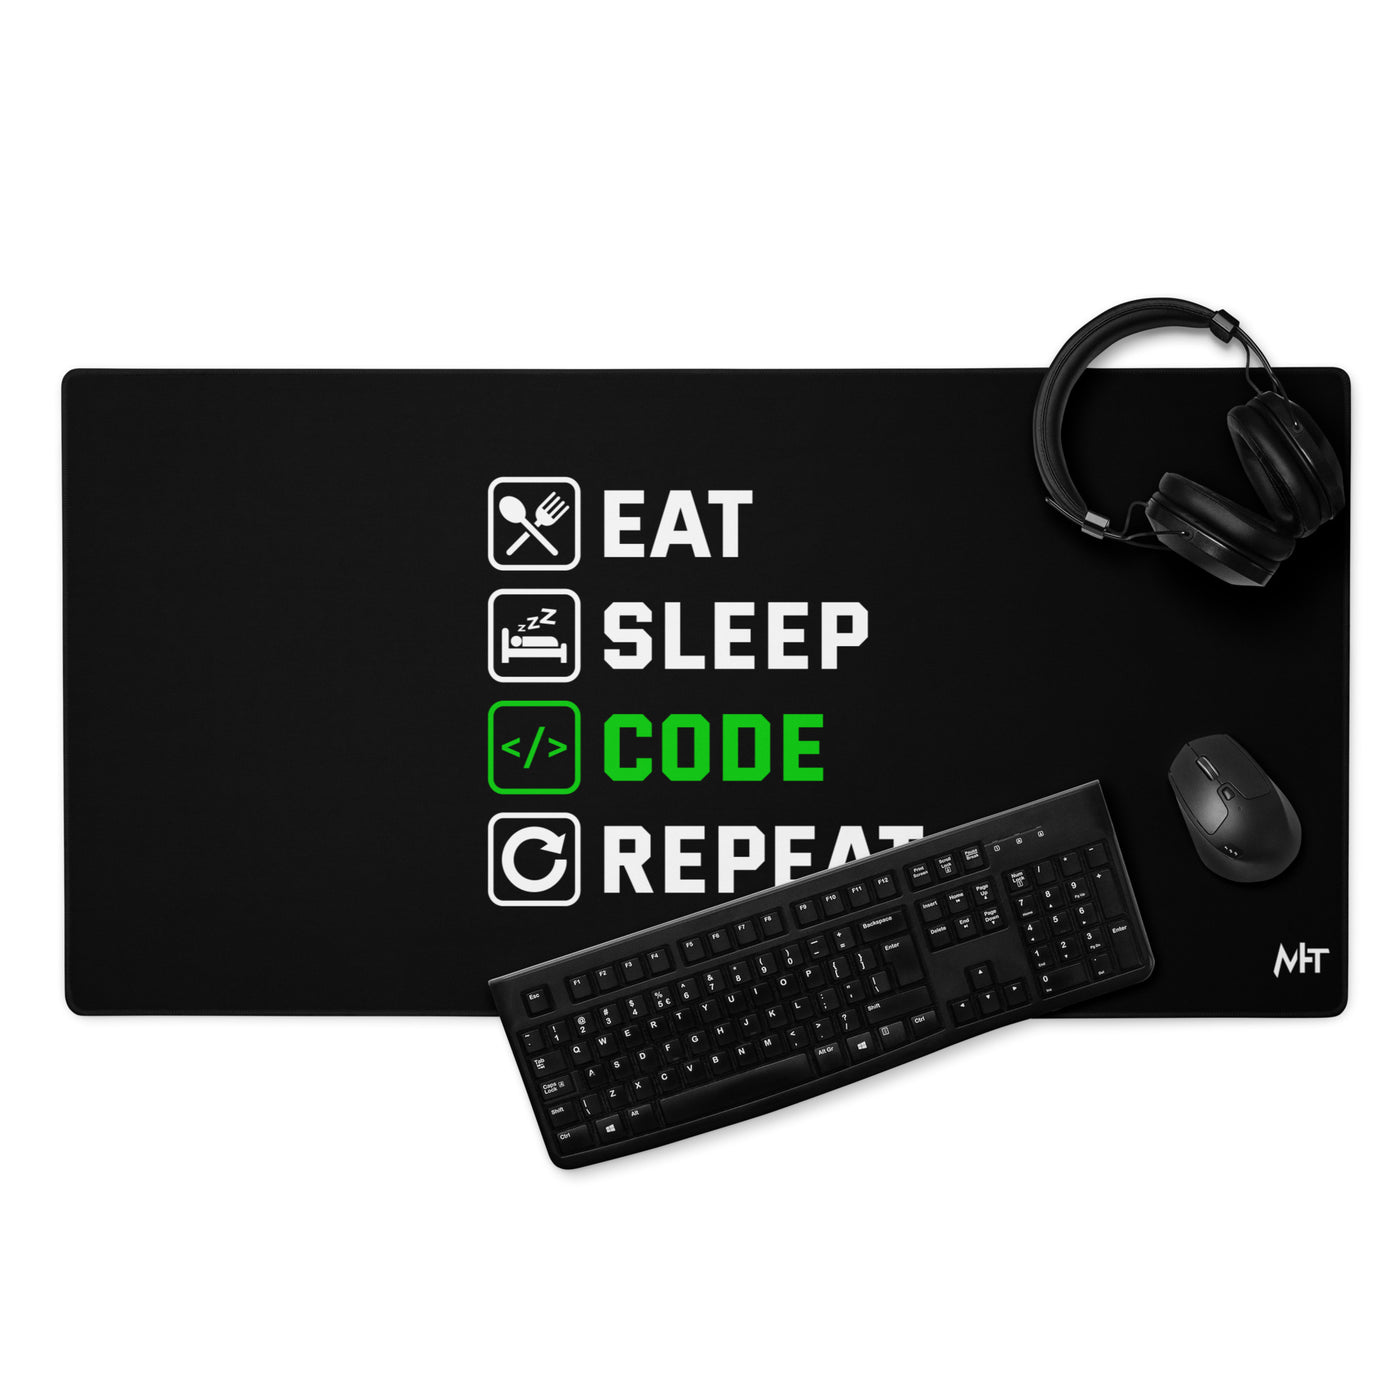 Eat Sleep Code Repeat ( Green Text ) - Desk Mat